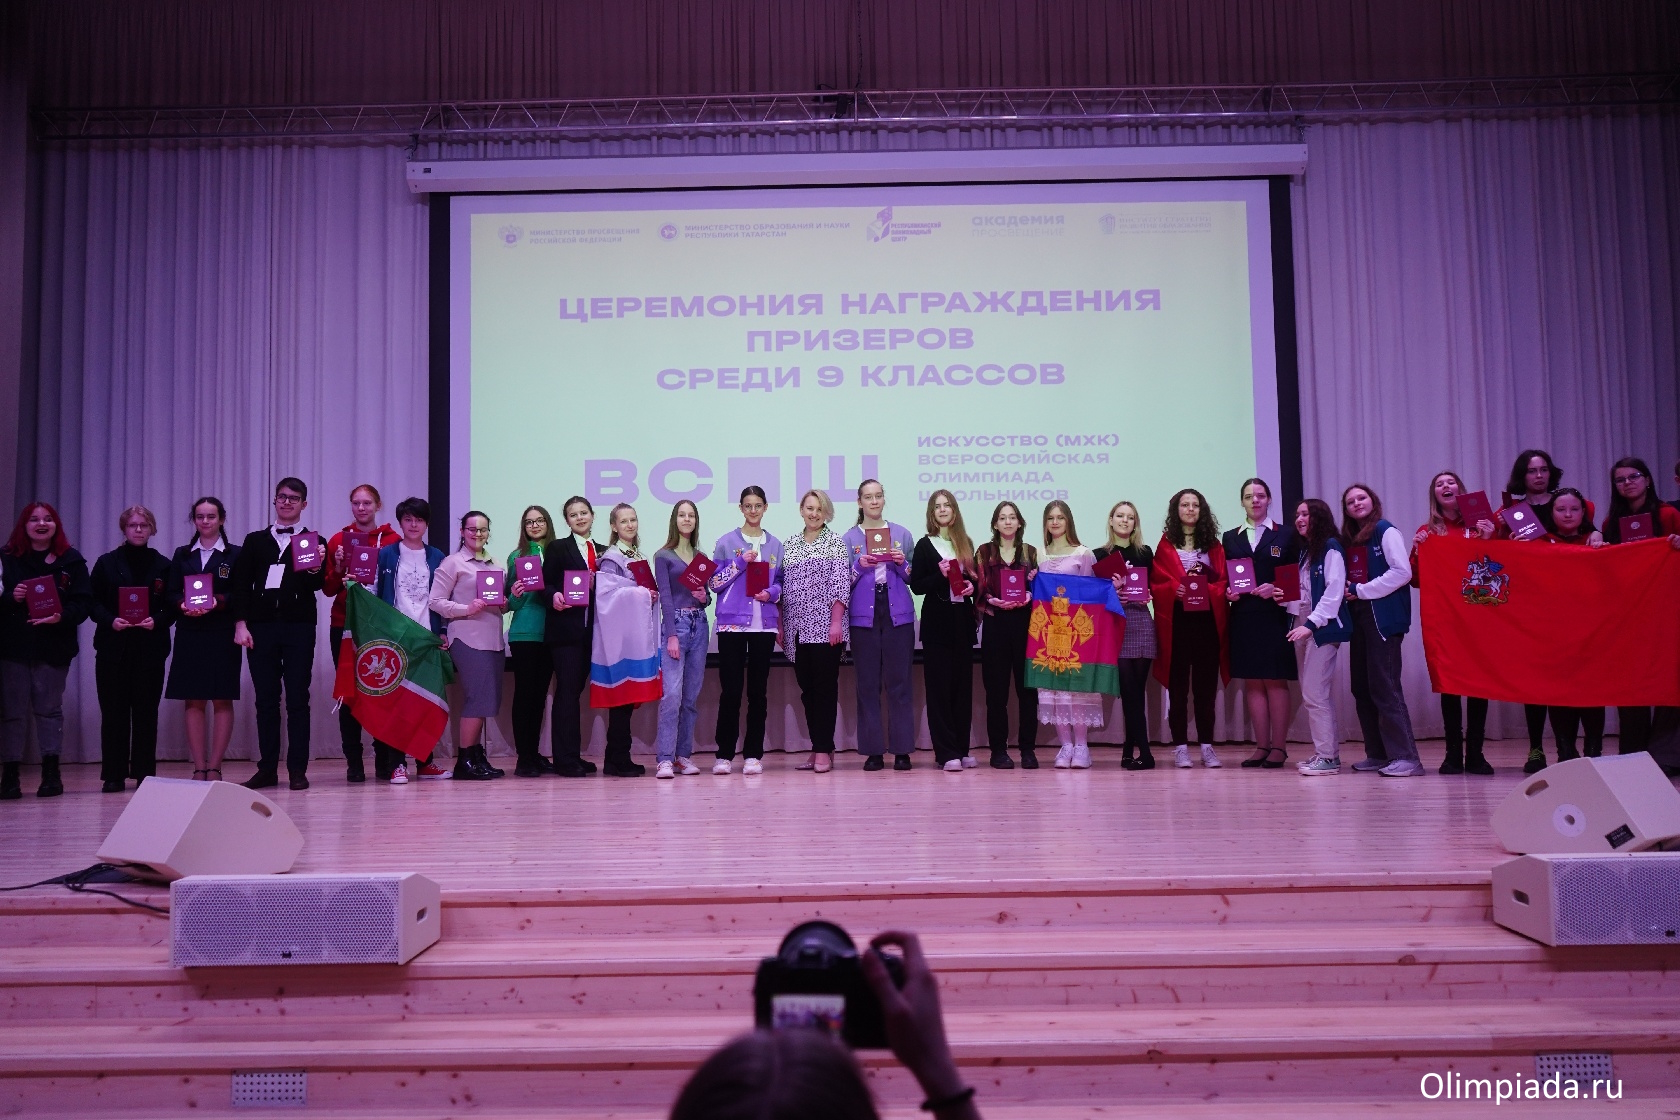 Преподаватели ИФМК КФУ работали в составе жюри Всероссийской олимпиады школьников по искусству (МХК)